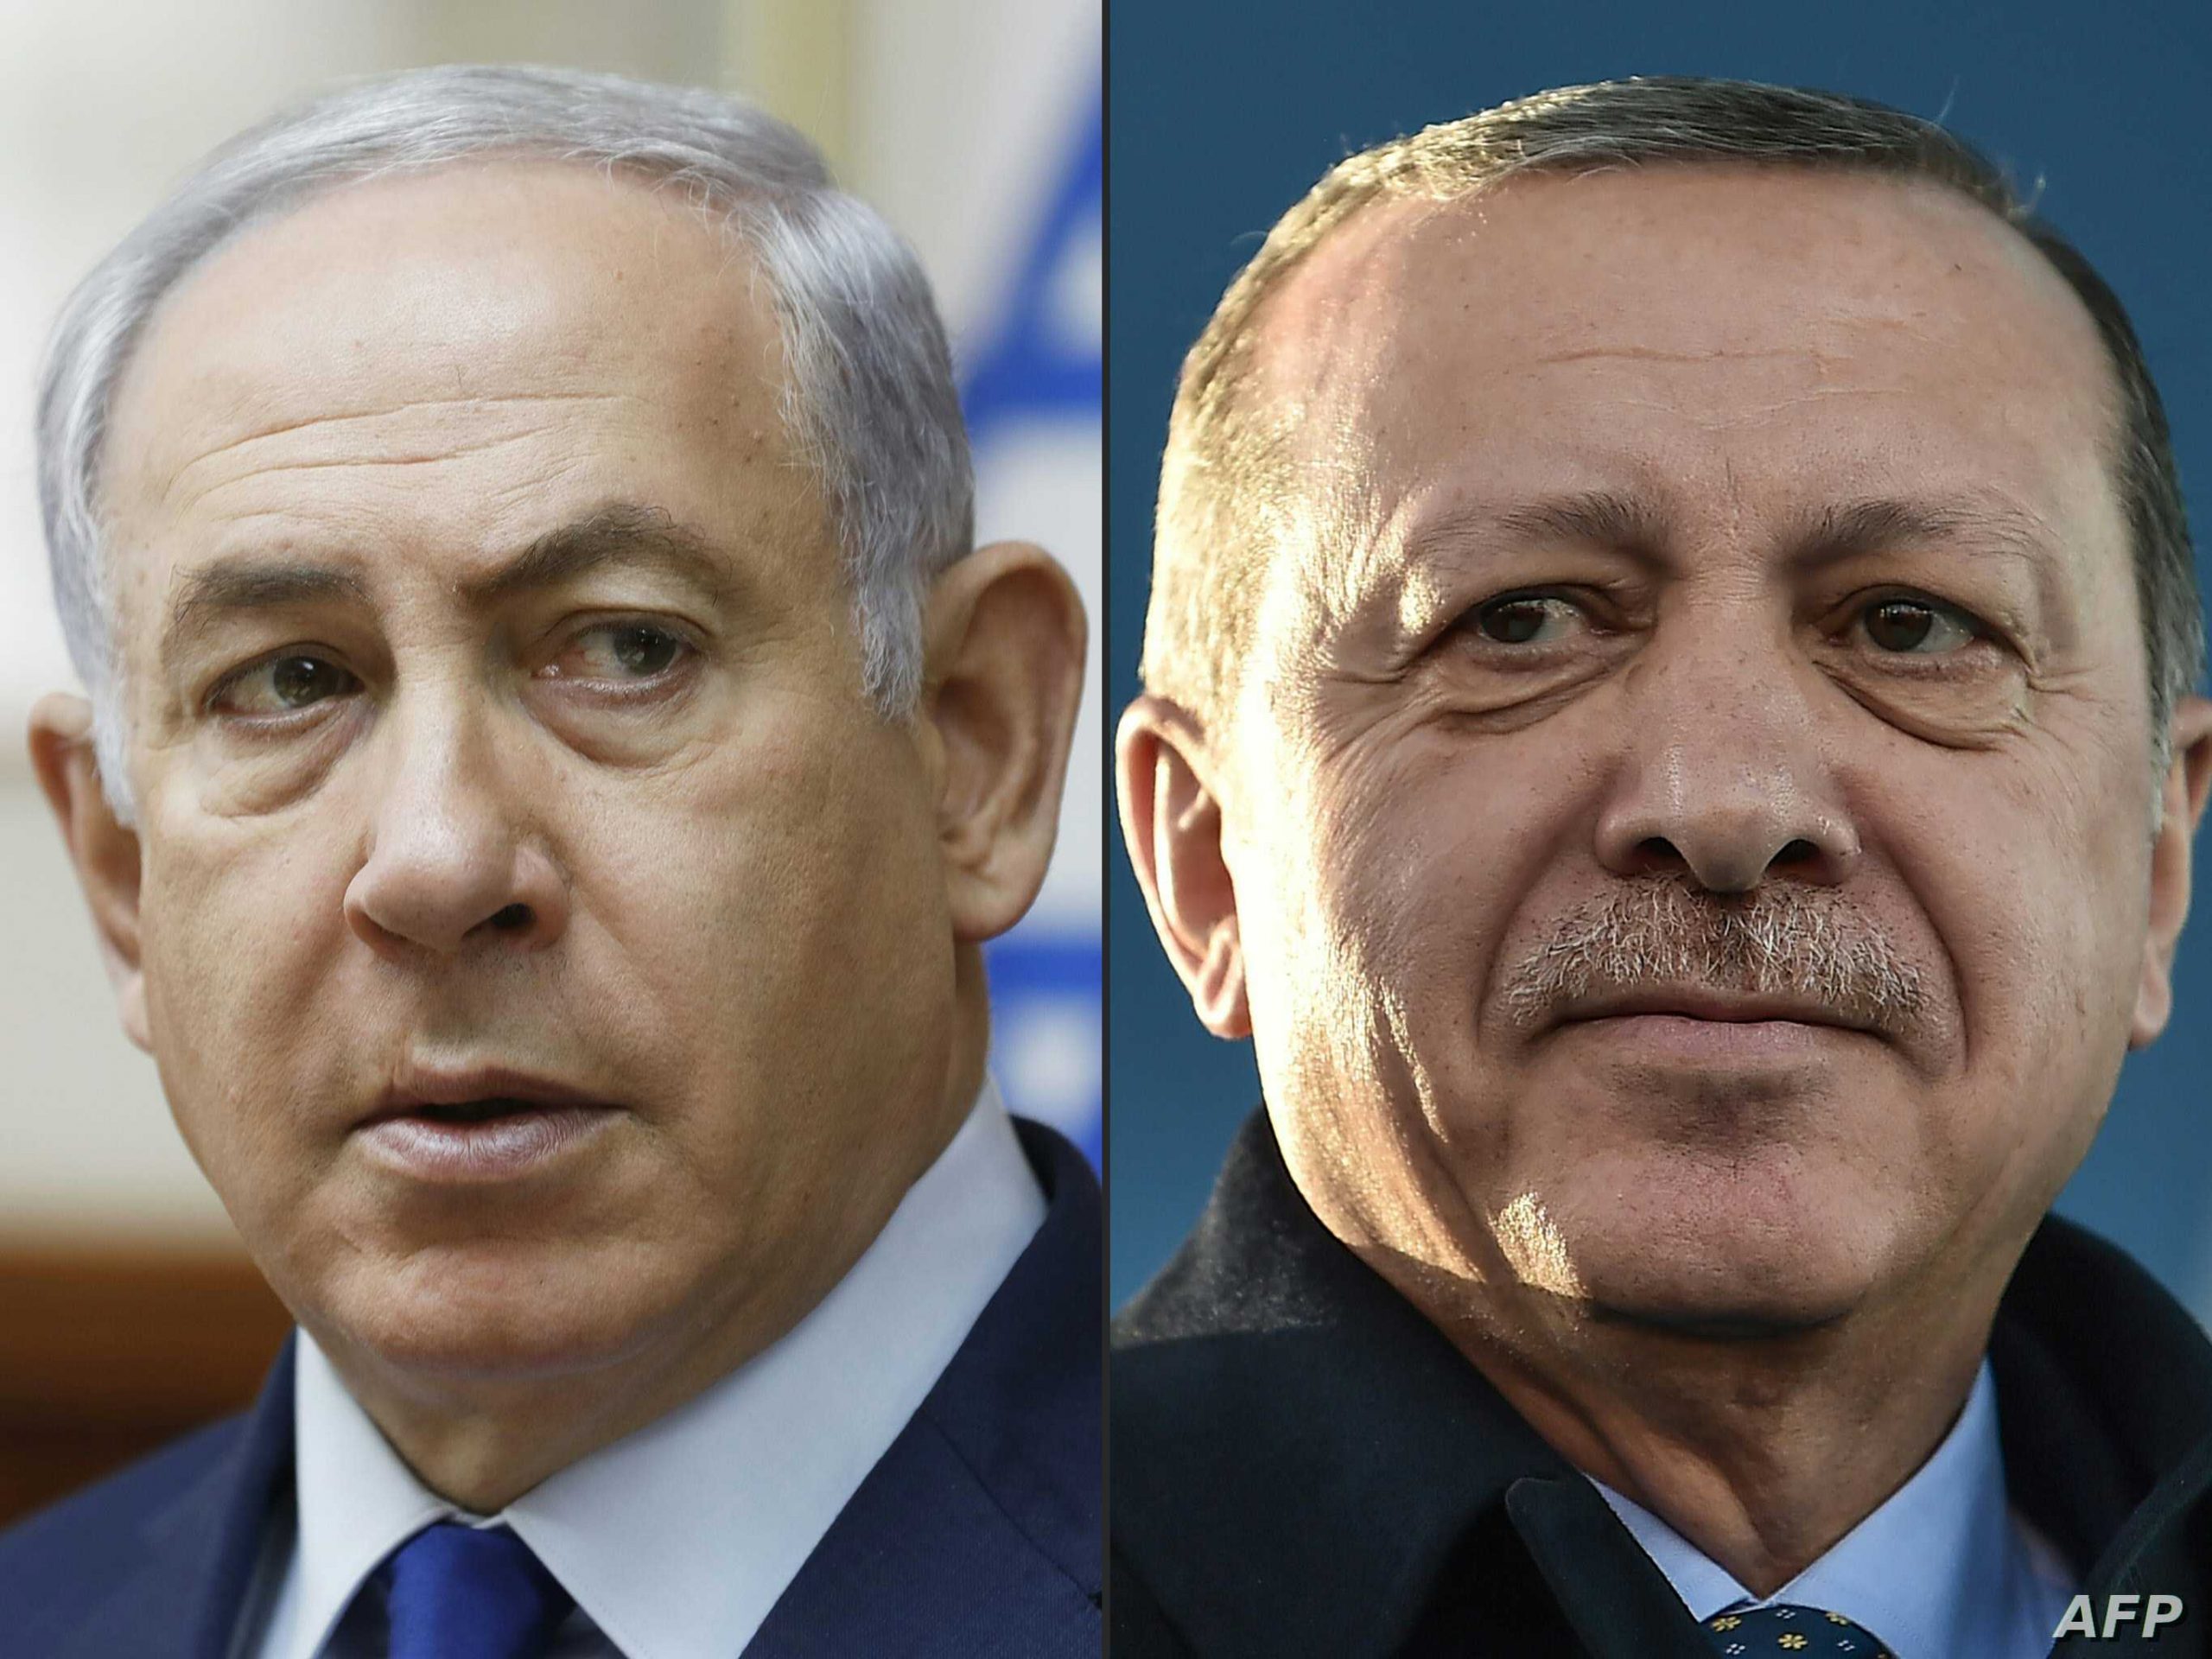 Aşırı sağcı Türk hükümeti bu yıl Hamas liderlerini iki kez ağırladı ve “Kudüs bizim” ve El Aksa Camii'ni İsrail'in kontrolünden “kurtaracağı” iddialarını destekledi - ama şimdi İsrail'i Washington'dan tecritinden kurtulmak için kullanmak istiyor.Görünen o ki yeni bir rapordan çıkan mesaj, "Milli İstihbarat Teşkilatı'nın İsrailli yetkililerle Türk gizli görüşmeleri olduğu" Öte yandan, Türk yetkililer, İran rejiminin İsrail hakkındaki radikal söylemini tekrarlayarak, Hamas gibi gruplarla çalışma ve İsrail'i her fırsatta vurma sözü verdiler. Ancak Al-Monitor makalesi, Türkiye'nin İsrail ile ilişkilerini "normalleştirmek" istediğini iddia ediyor. Bu, ilişkilerin normalleşmesi nedeniyle Körfez ülkeleriyle ilişkileri kesme tehdidinde bulunan aynı Ankara rejimidir. 